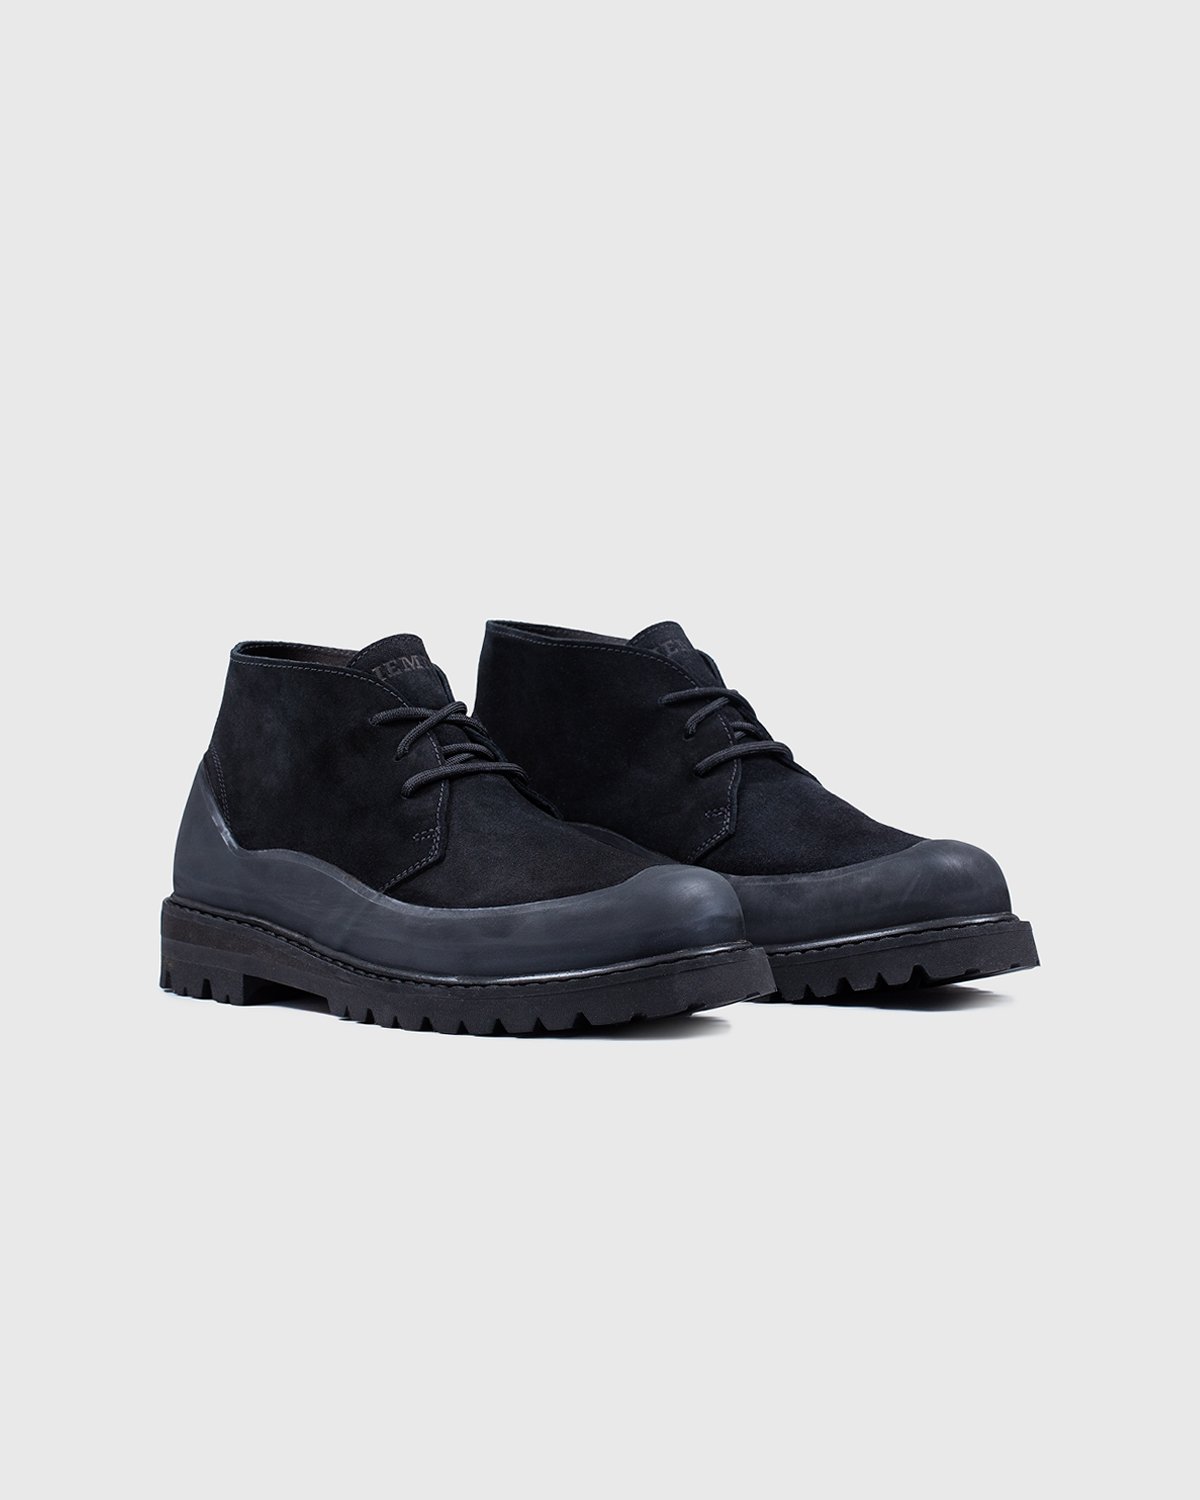 Diemme - Asiago Black Suede - Footwear - Black - Image 2